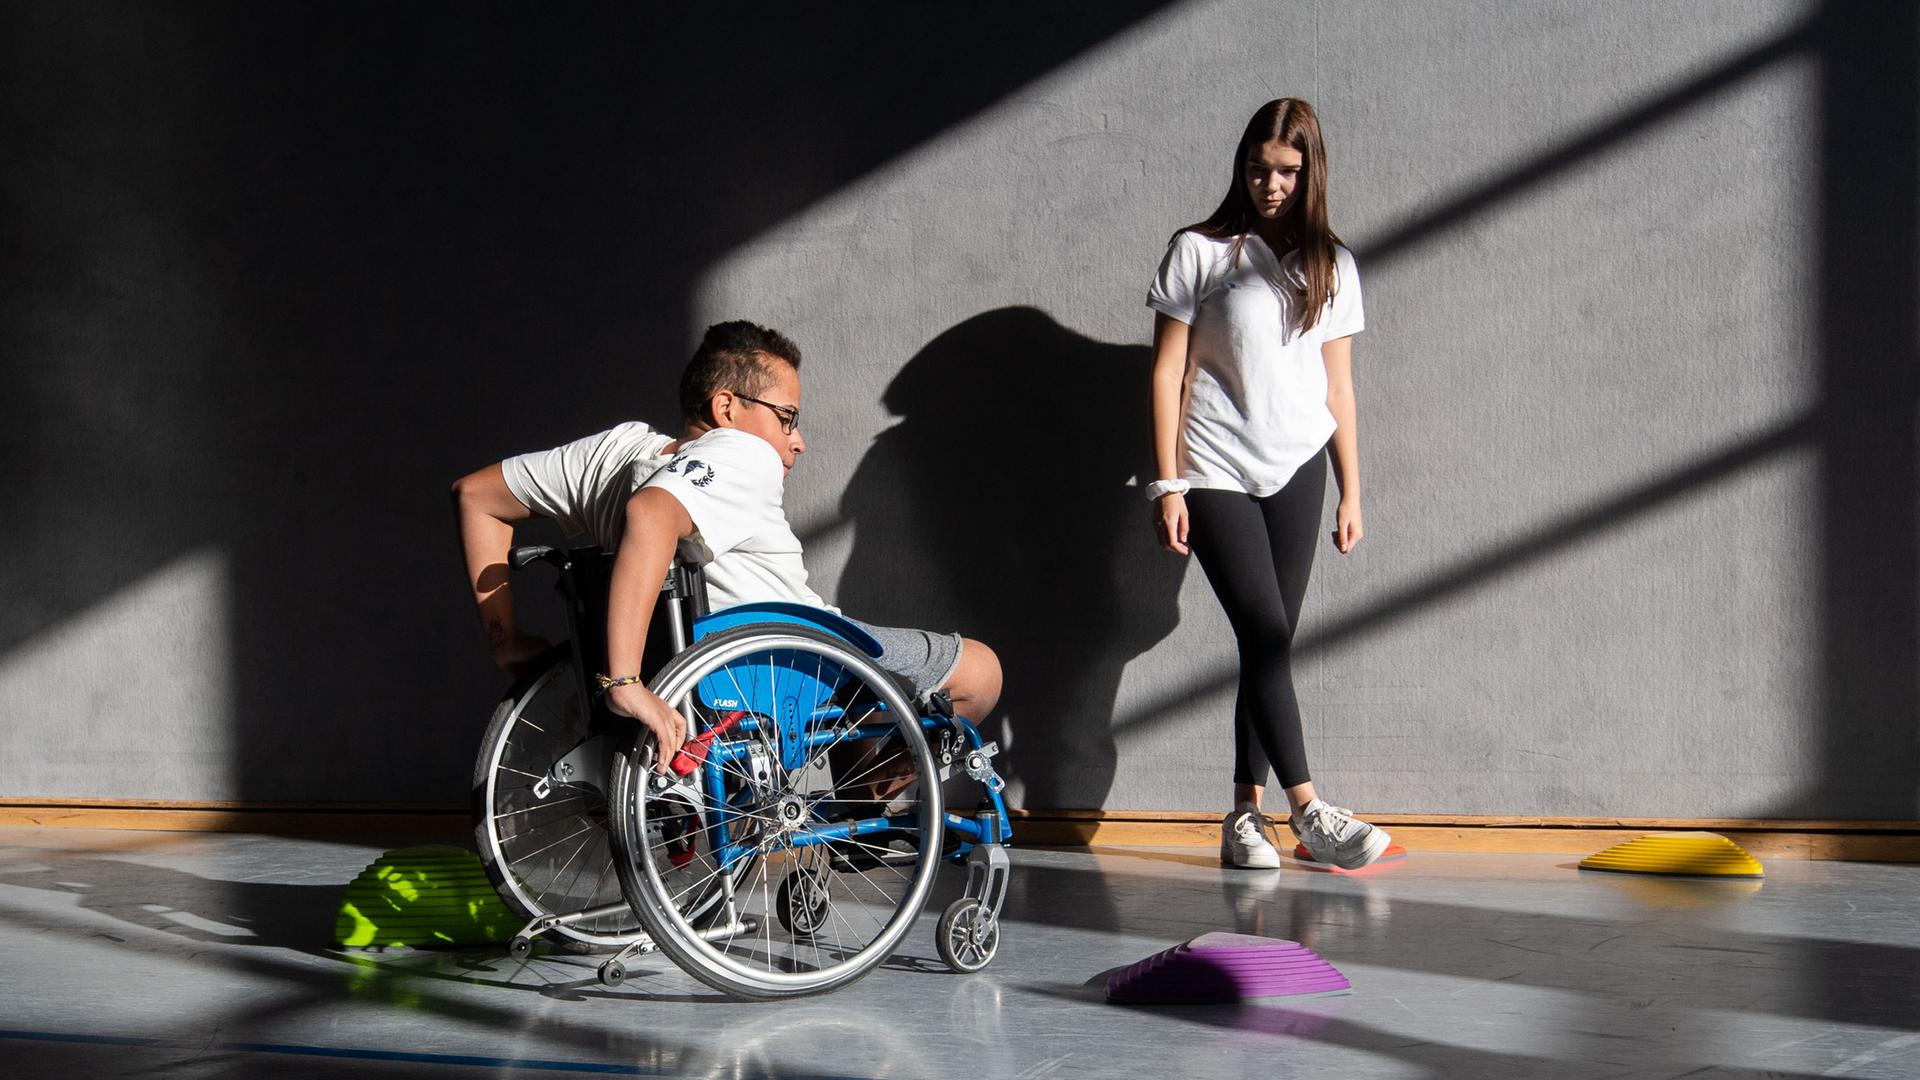 Ein Schüler der Förderschule Paul-Klee-Schule in Celle fährt mit seinem Rollstuhl in der Sporthalle des Gymnasium Burgdorf Slalom um Hindernisse, während eine Schülerin zuschaut.